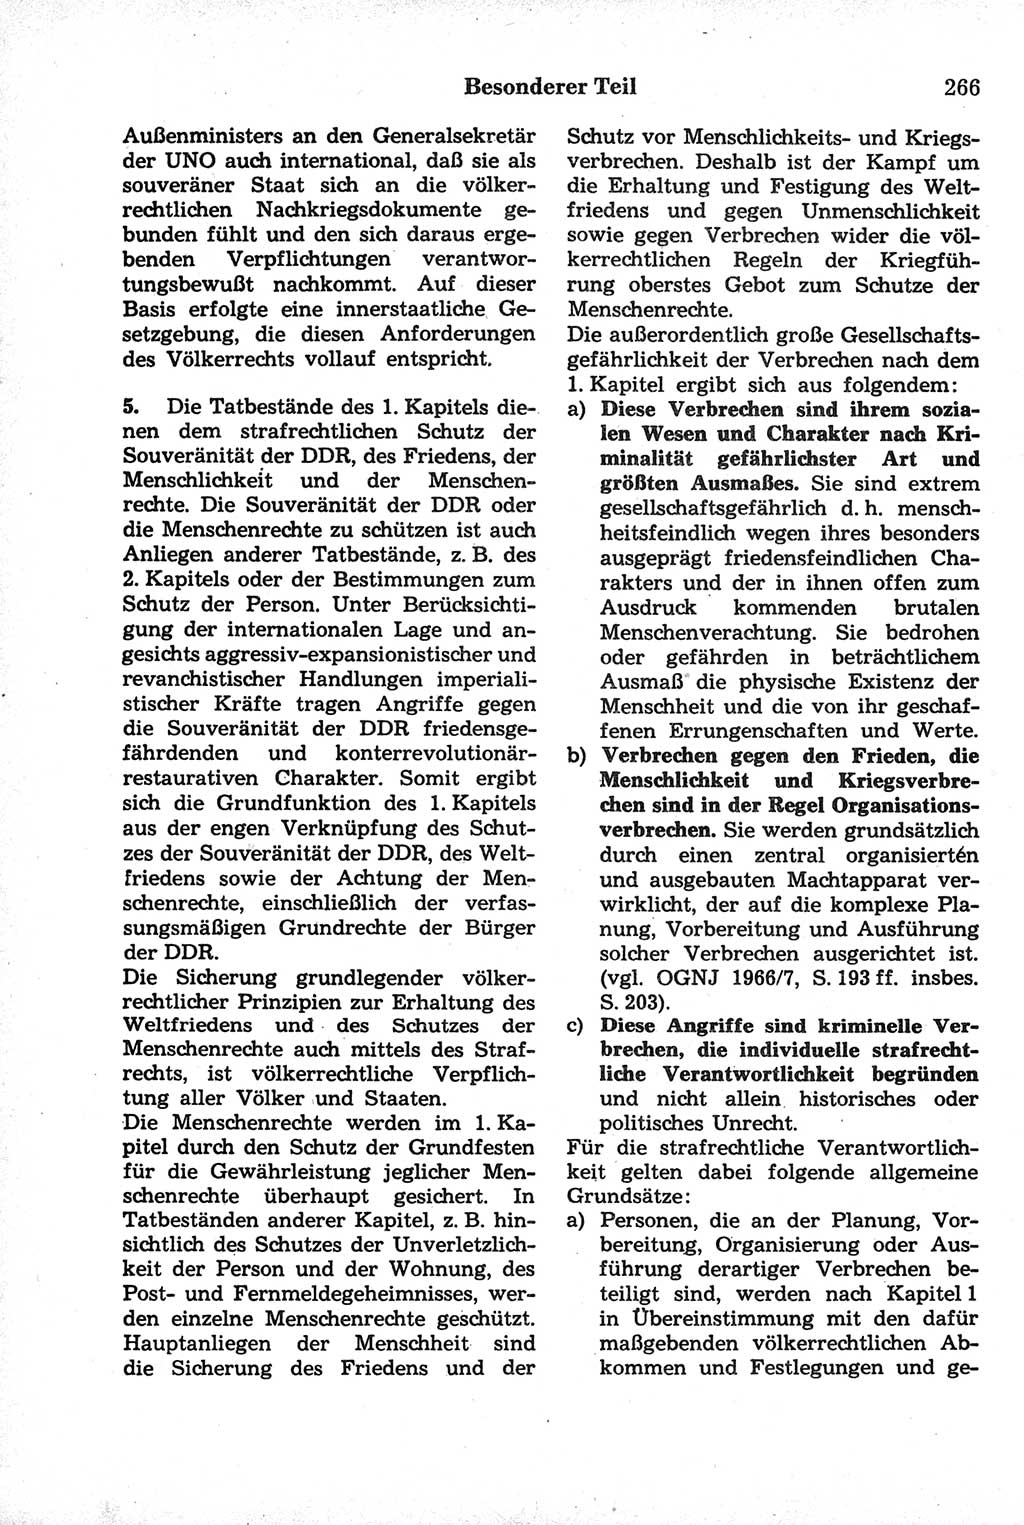 Strafrecht der Deutschen Demokratischen Republik (DDR), Kommentar zum Strafgesetzbuch (StGB) 1981, Seite 266 (Strafr. DDR Komm. StGB 1981, S. 266)